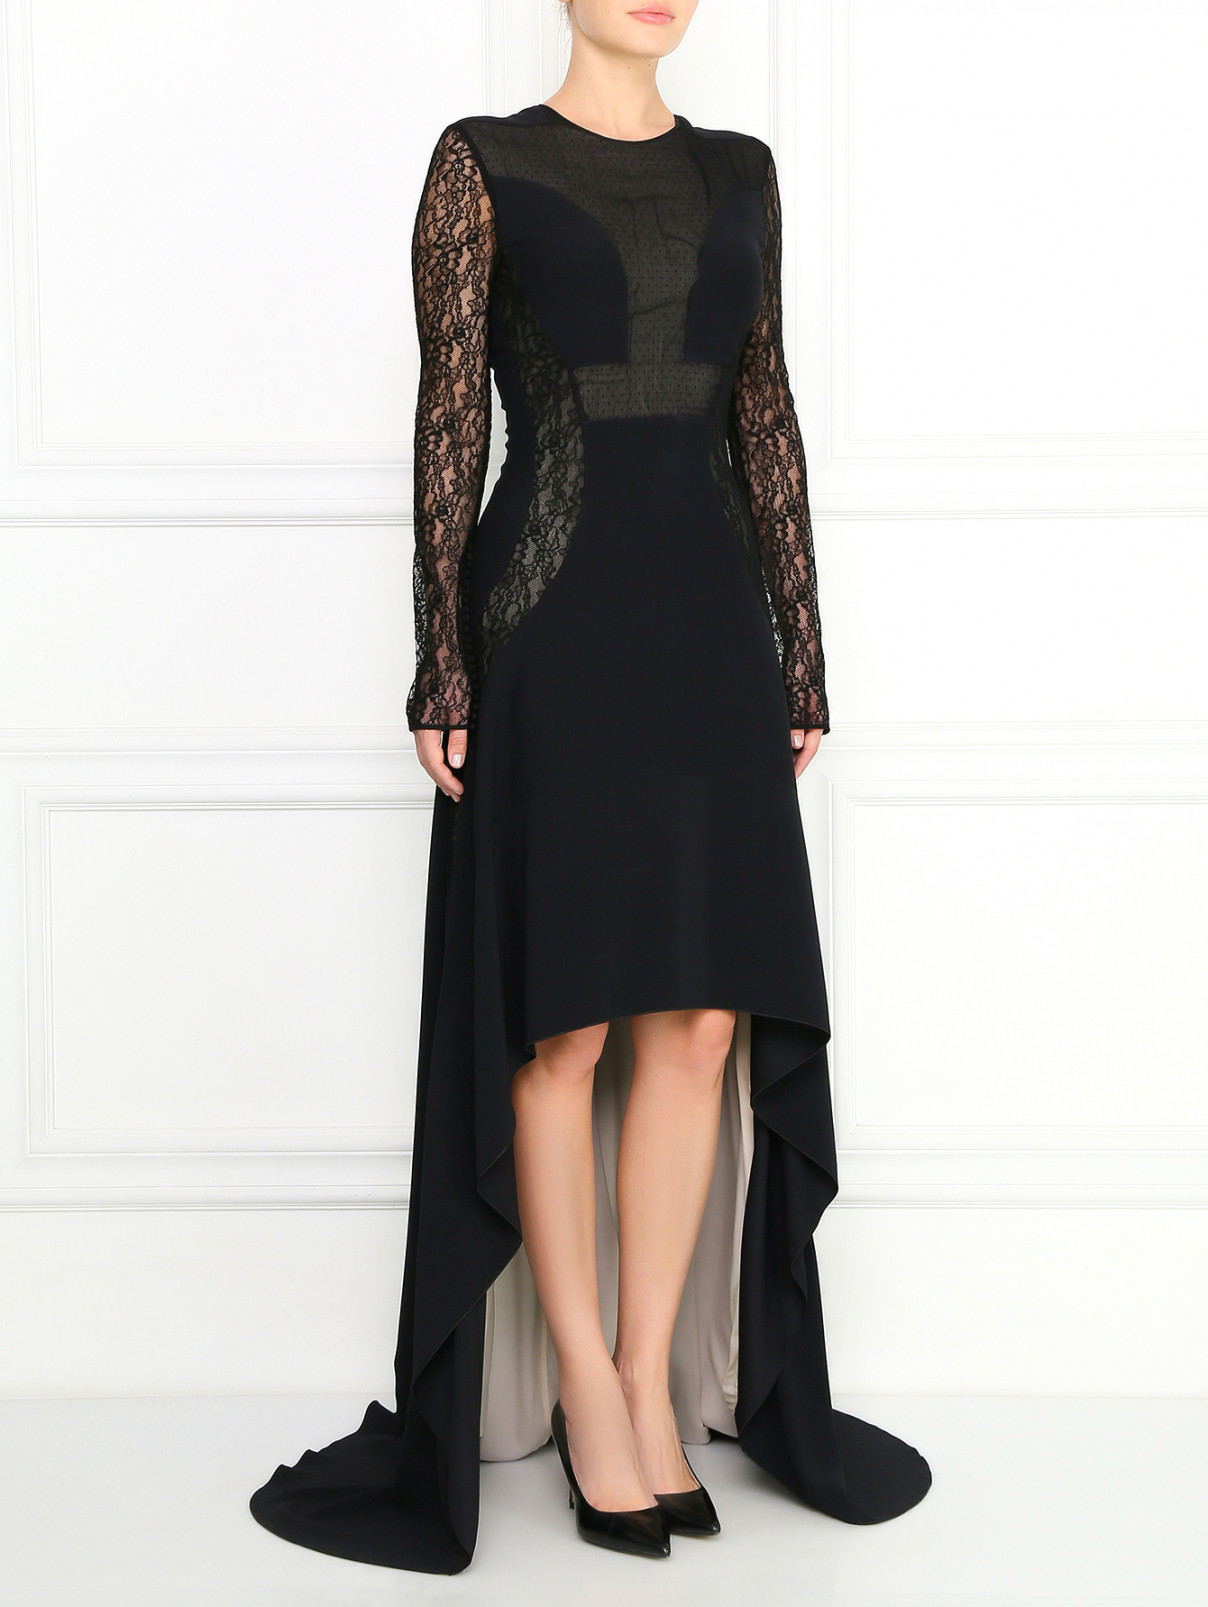 Платье-макси из шелка с кружевом и ассиметричным подолом Antonio Berardi  –  Модель Общий вид  – Цвет:  Черный